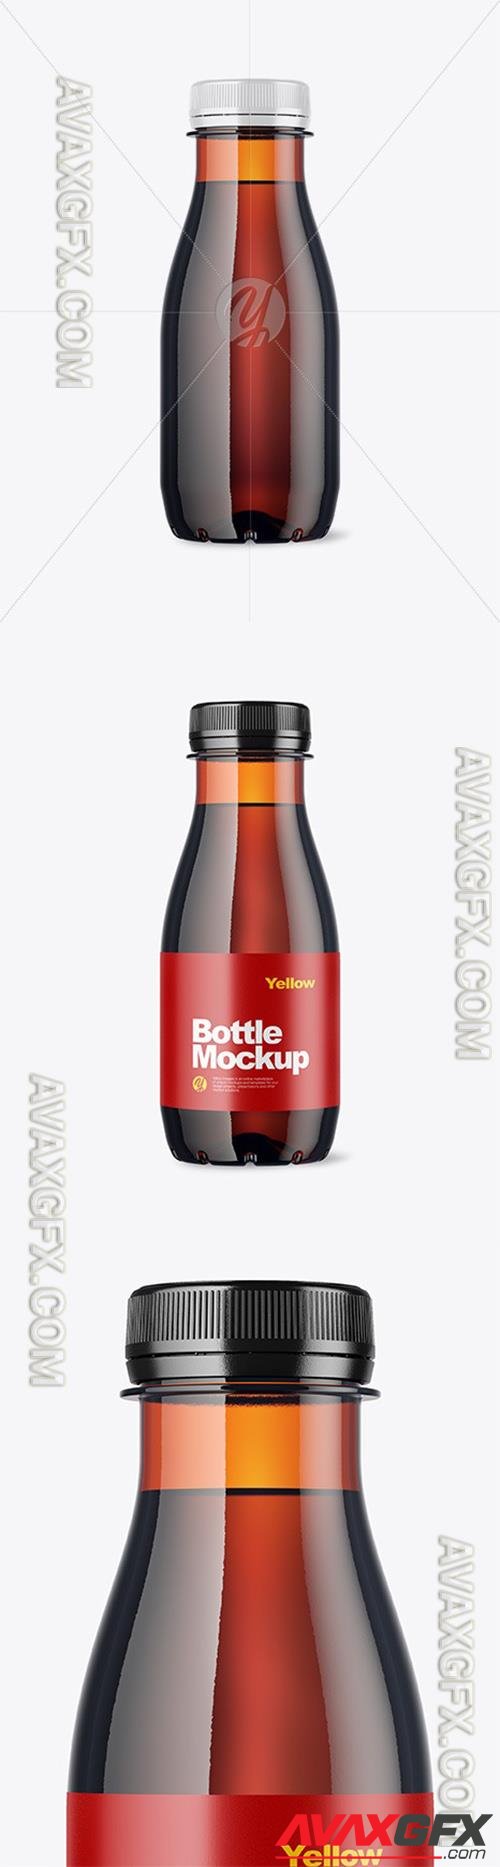 Amber Bottle Mockup 48251 TIF